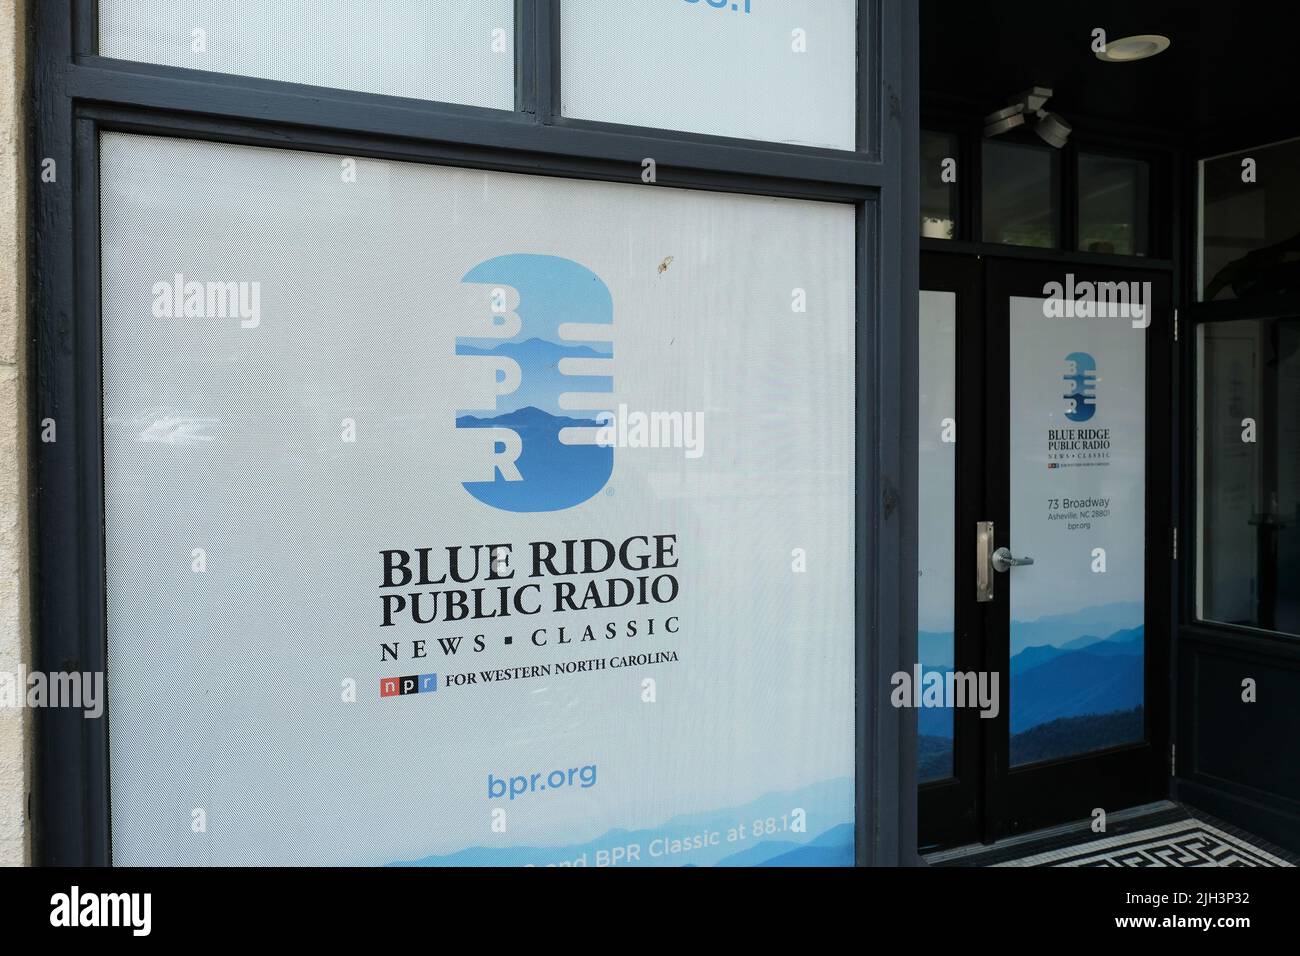 Sede central de la estación de radio pública de Blue Ridge en Asheville, Carolina del Norte; radio pública para la región occidental de Carolina del Norte que transmite noticias y música Foto de stock